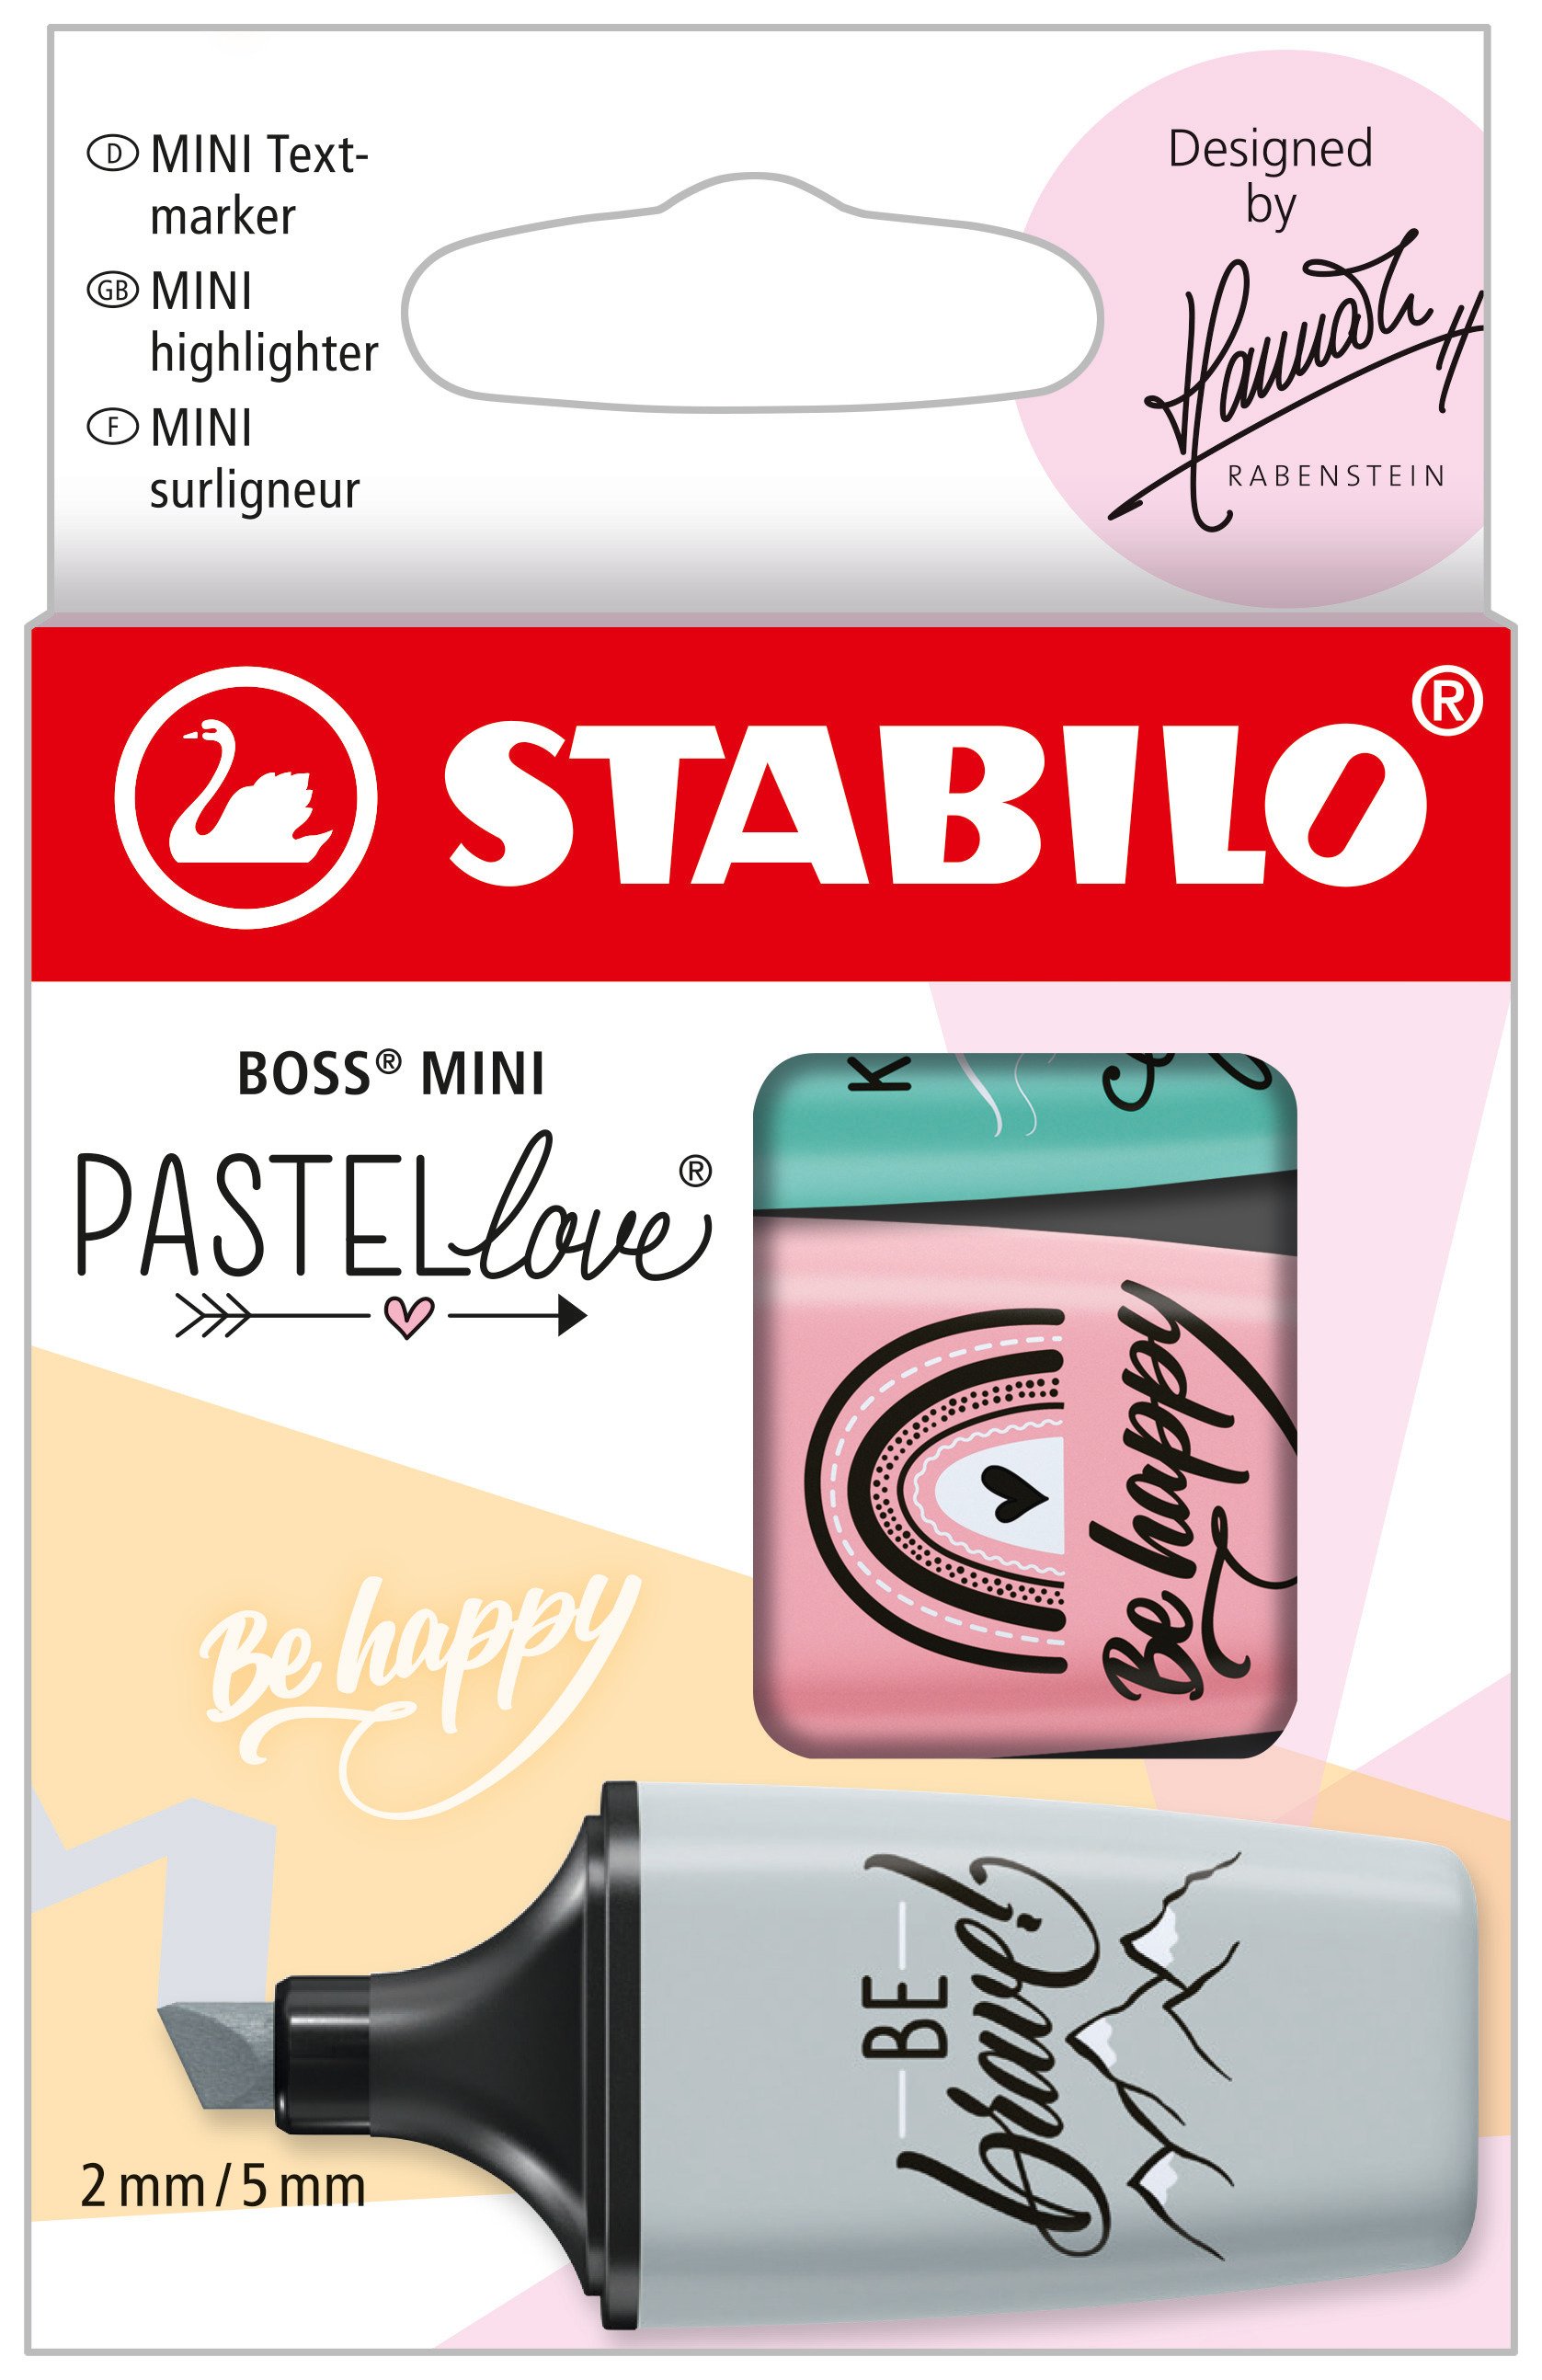 Textmarker STABILO BOSS MINI Pastellove Edition 2.0